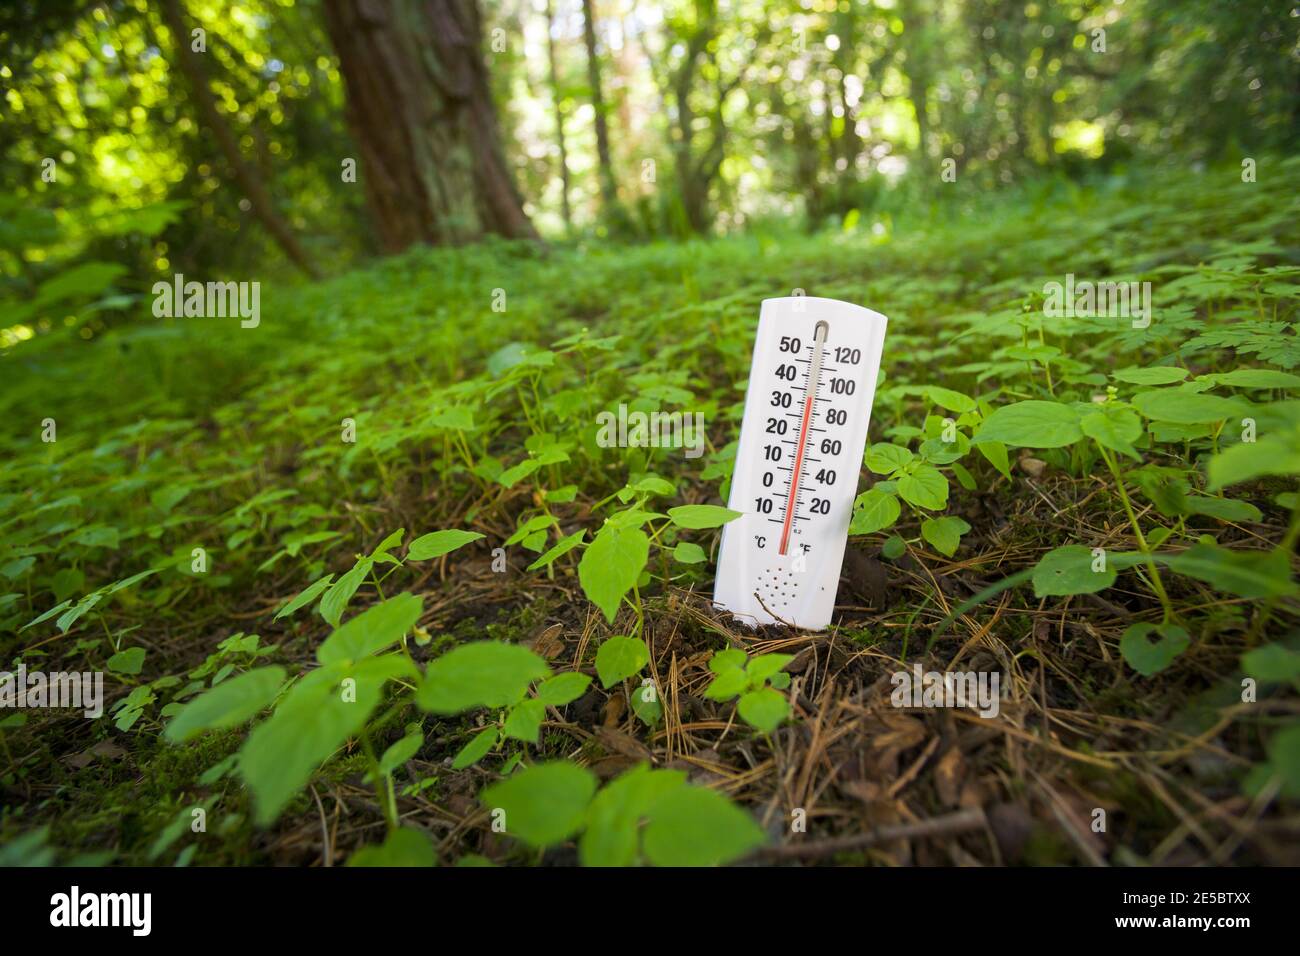 Une image conceptuelle d'un thermomètre collé dans le sol montrant une température élevée illustrant le changement climatique global / réchauffement de la planète. Banque D'Images